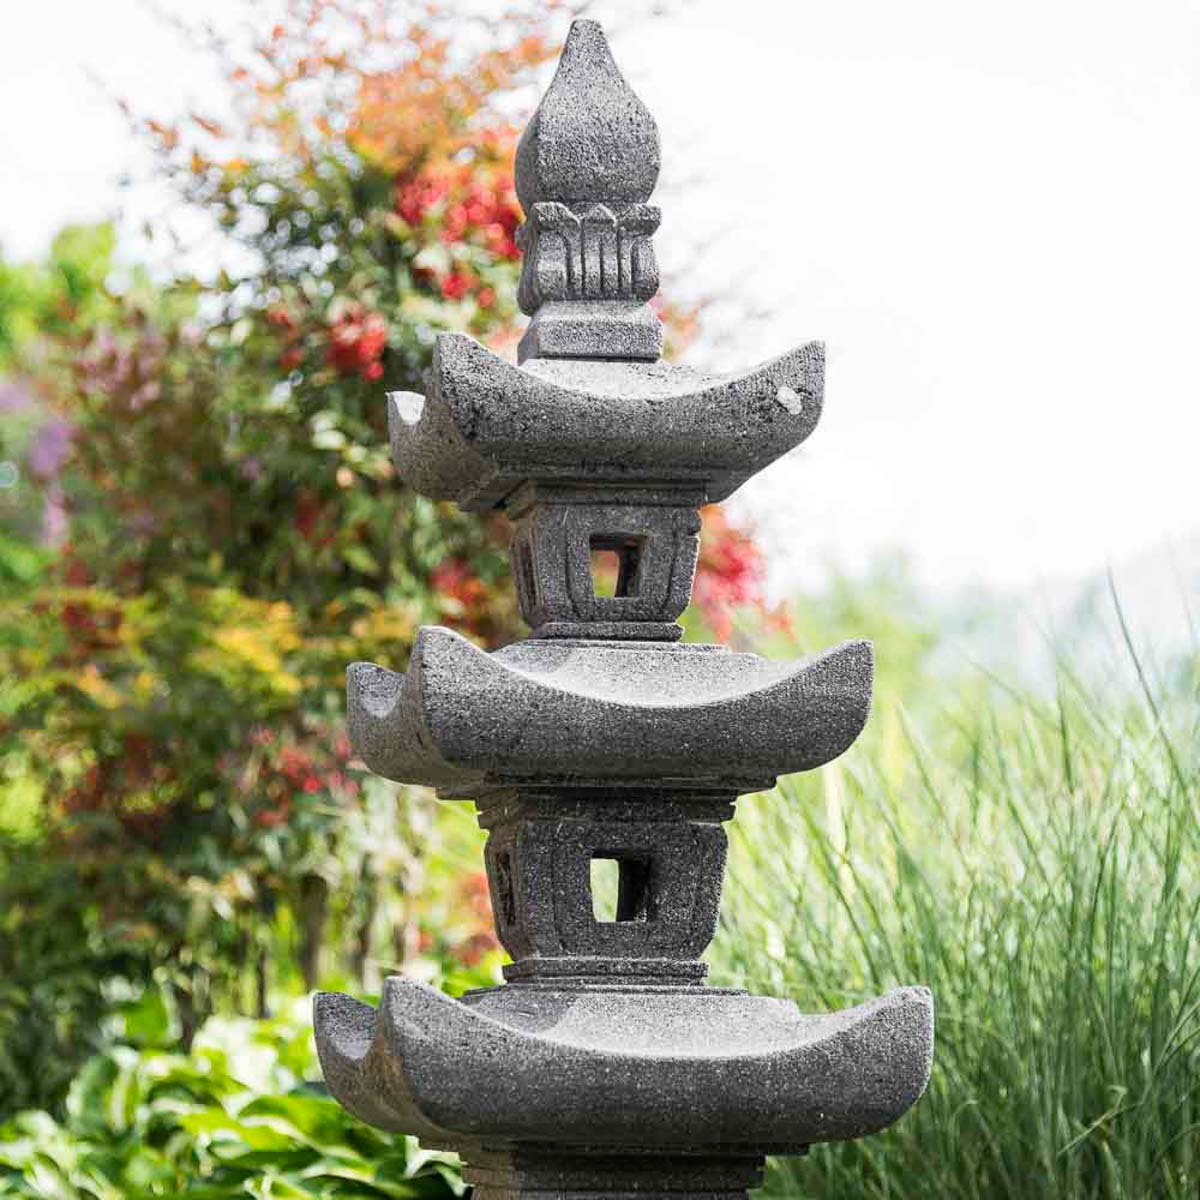 Lanterne japonaise pagode en pierre de lave jardin zen 100 cm